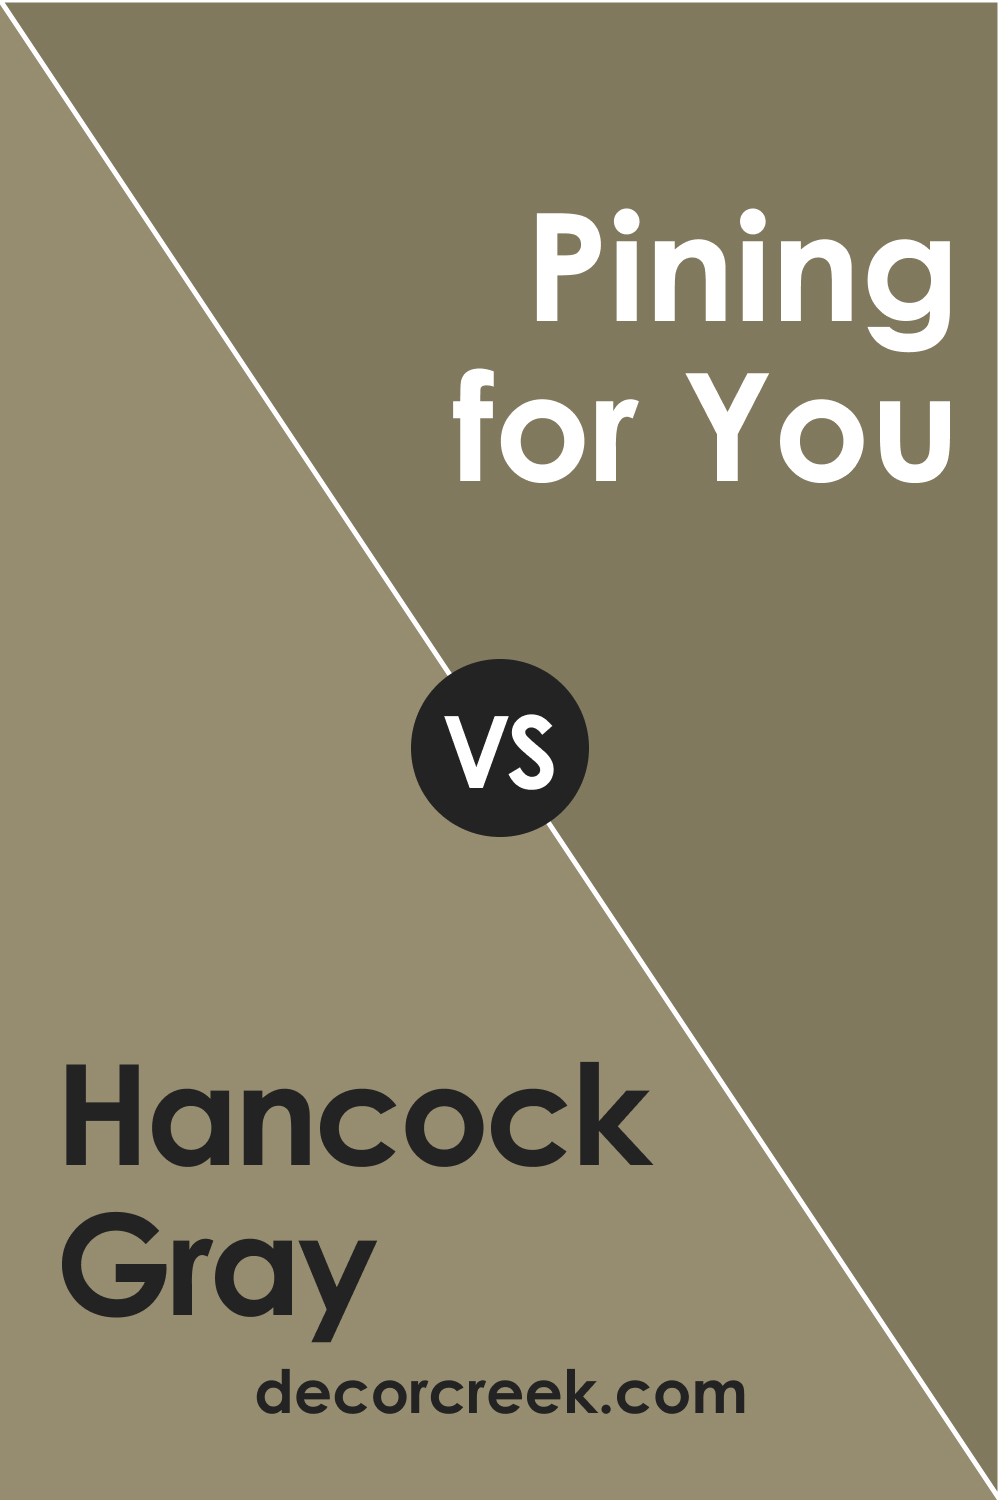 Hancock Gray HC-97 vs. BM 1512 Pining for You